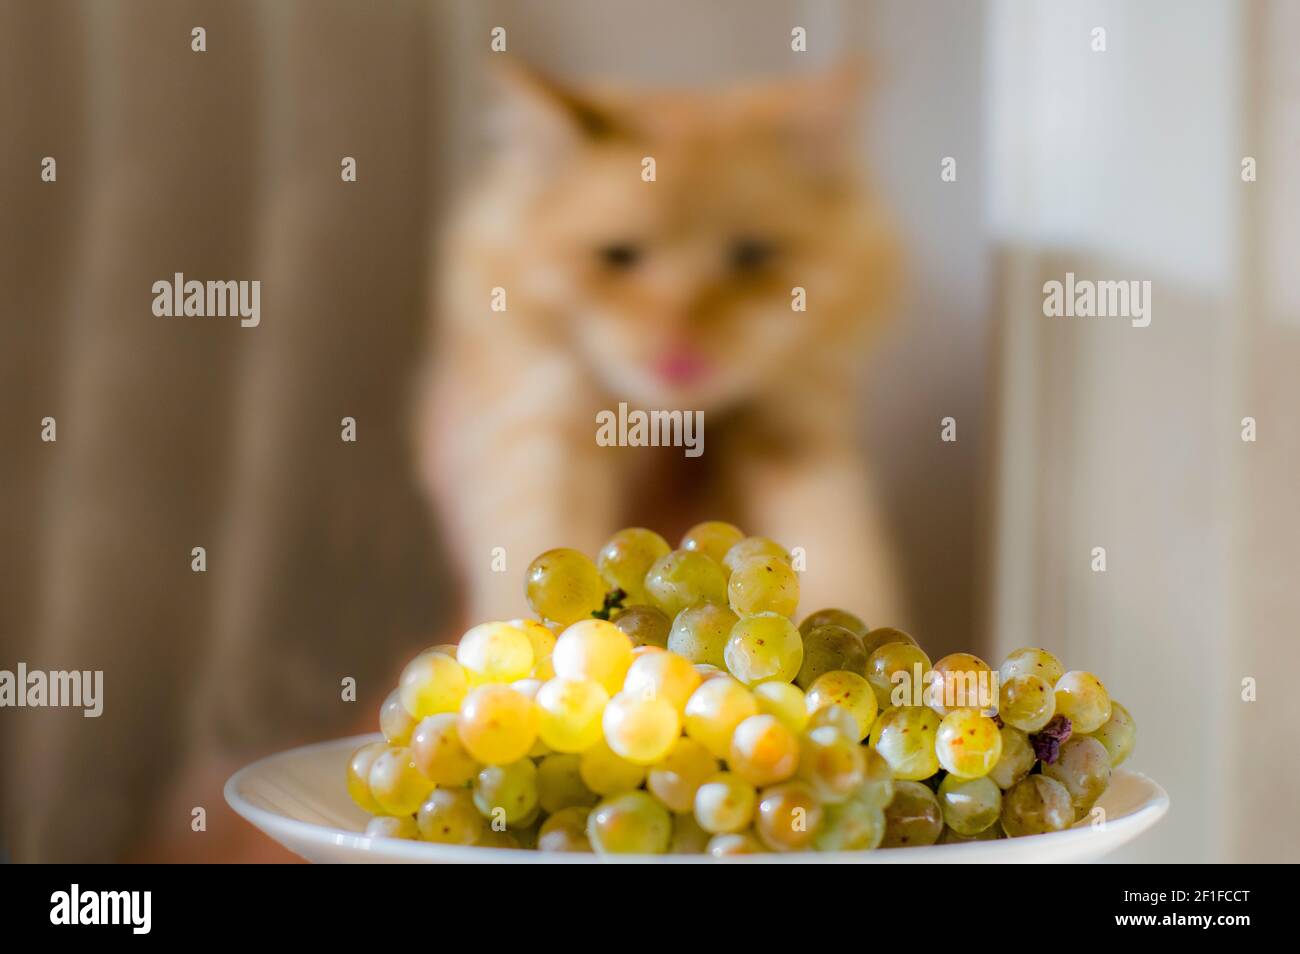 Soffice gatto giallo, vicino ad un mazzo di uva riesling Foto Stock